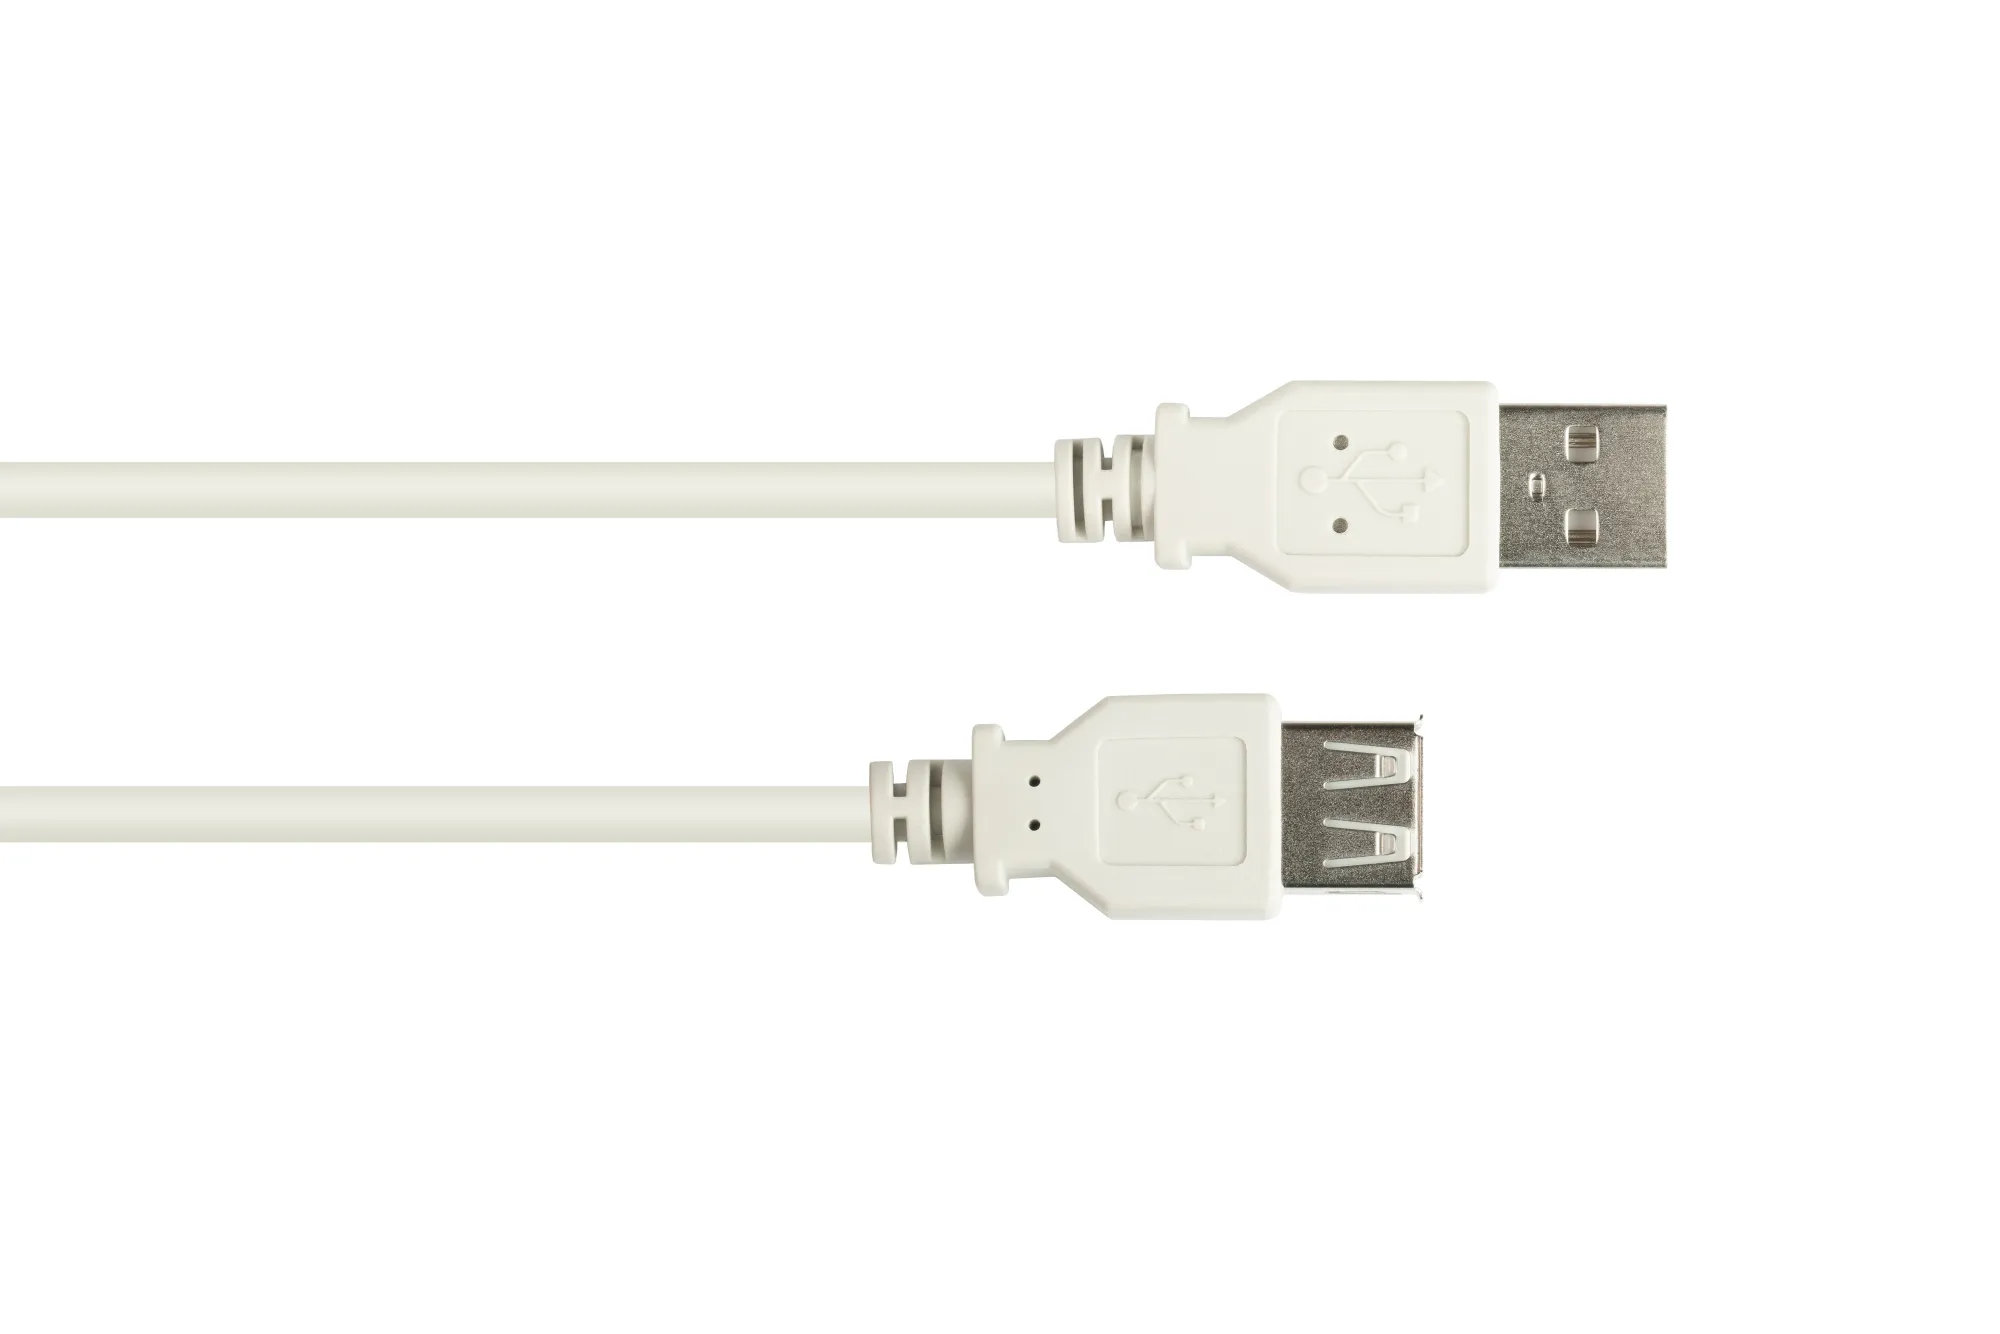 Verlängerungskabel USB 2.0 Stecker A an Buchse A, grau, 1,8m, Good Connections®